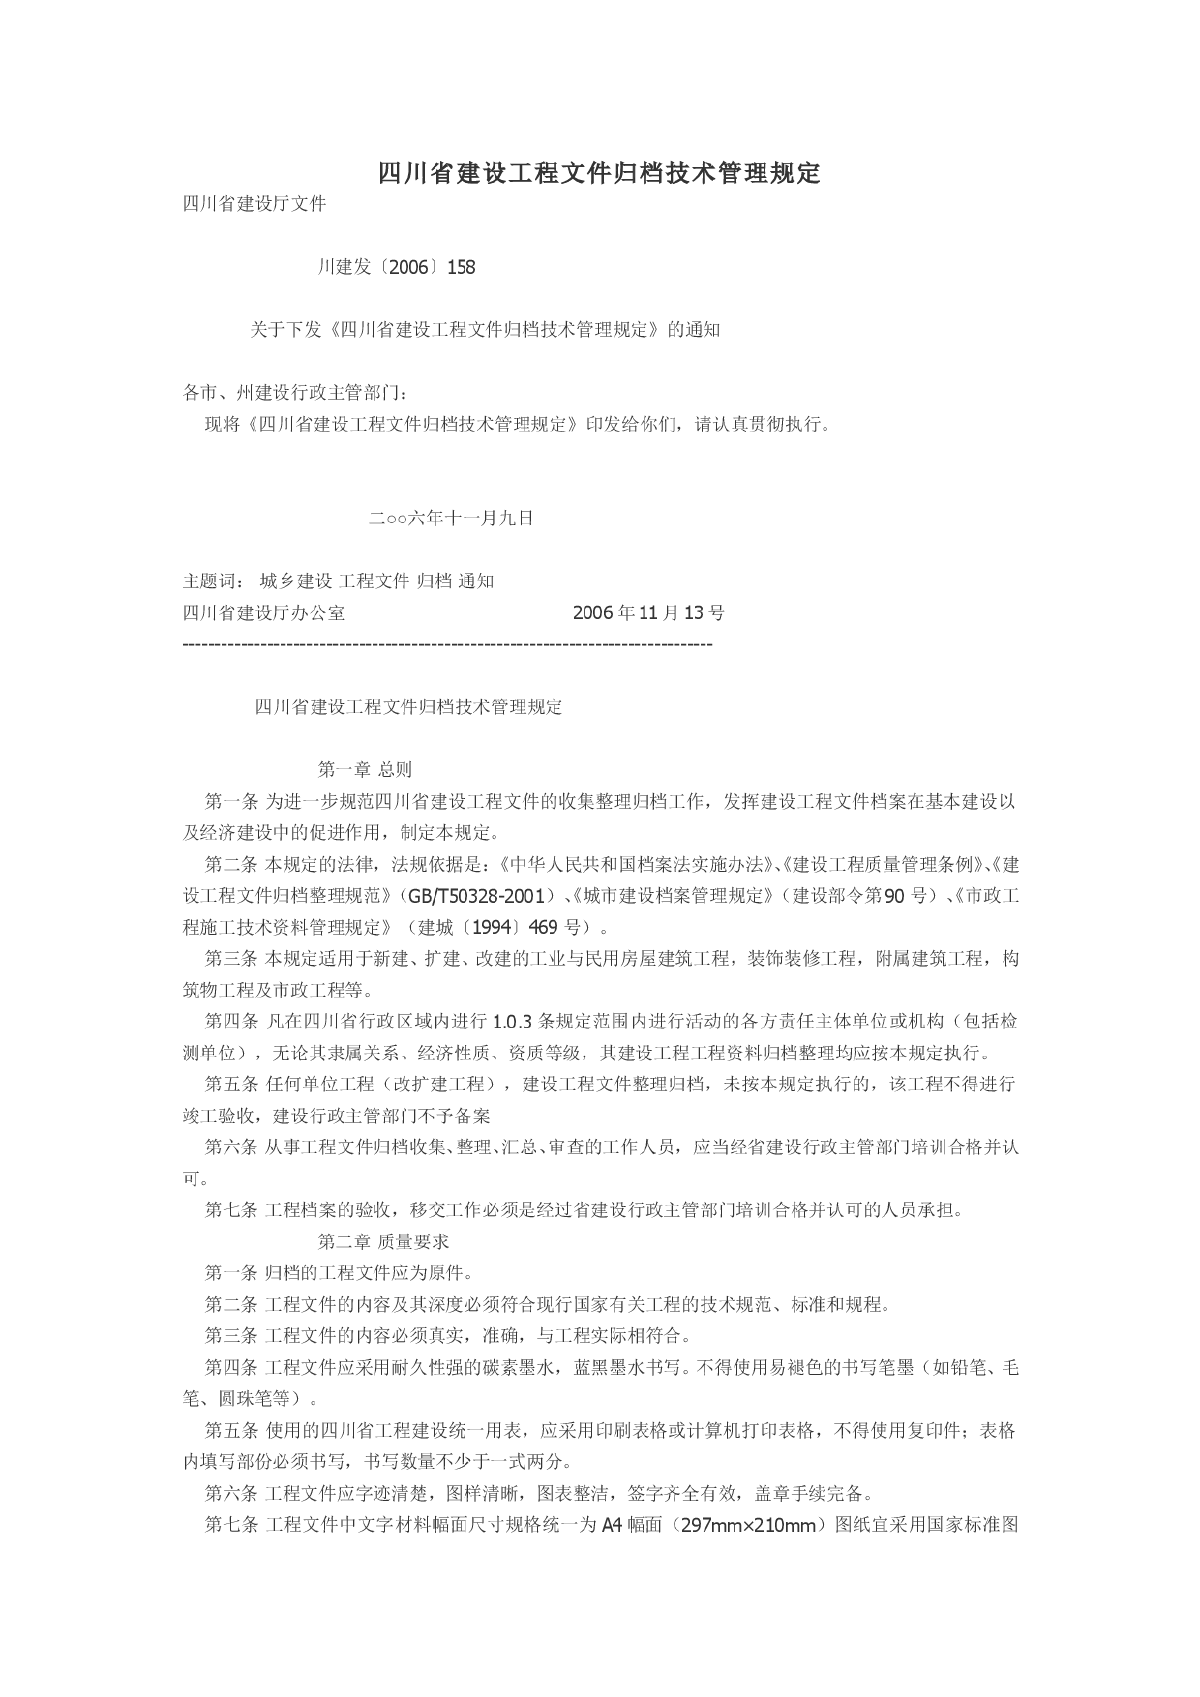 四川省建设工程文件归档技术管理规定